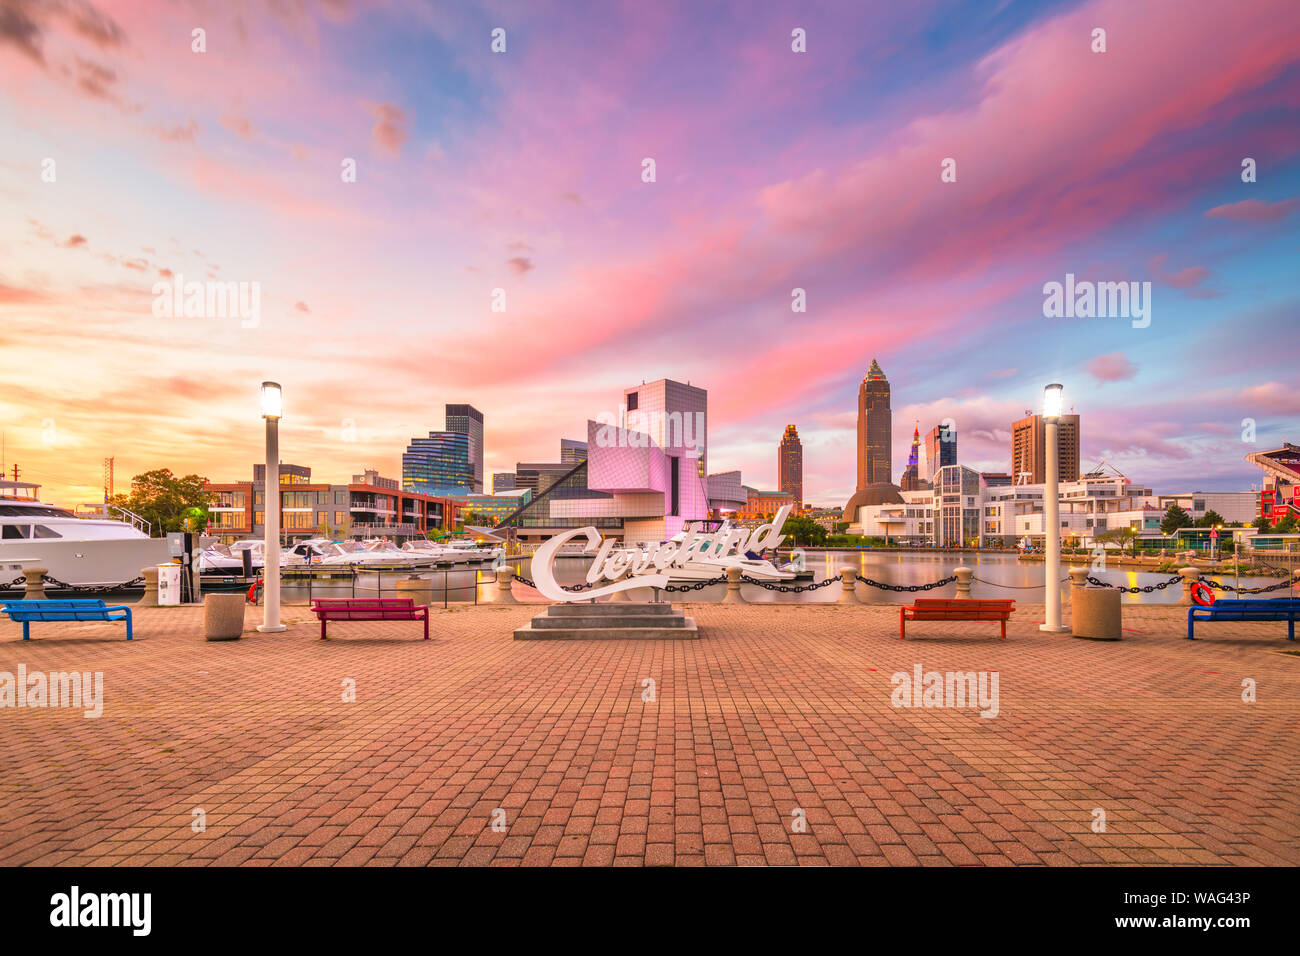 Agost1 10, 2019 - Cleveland Ohio: The Landmark skyline del centro di Cleveland da Voinovich Bicentennial Park nelle prime ore del mattino. Foto Stock